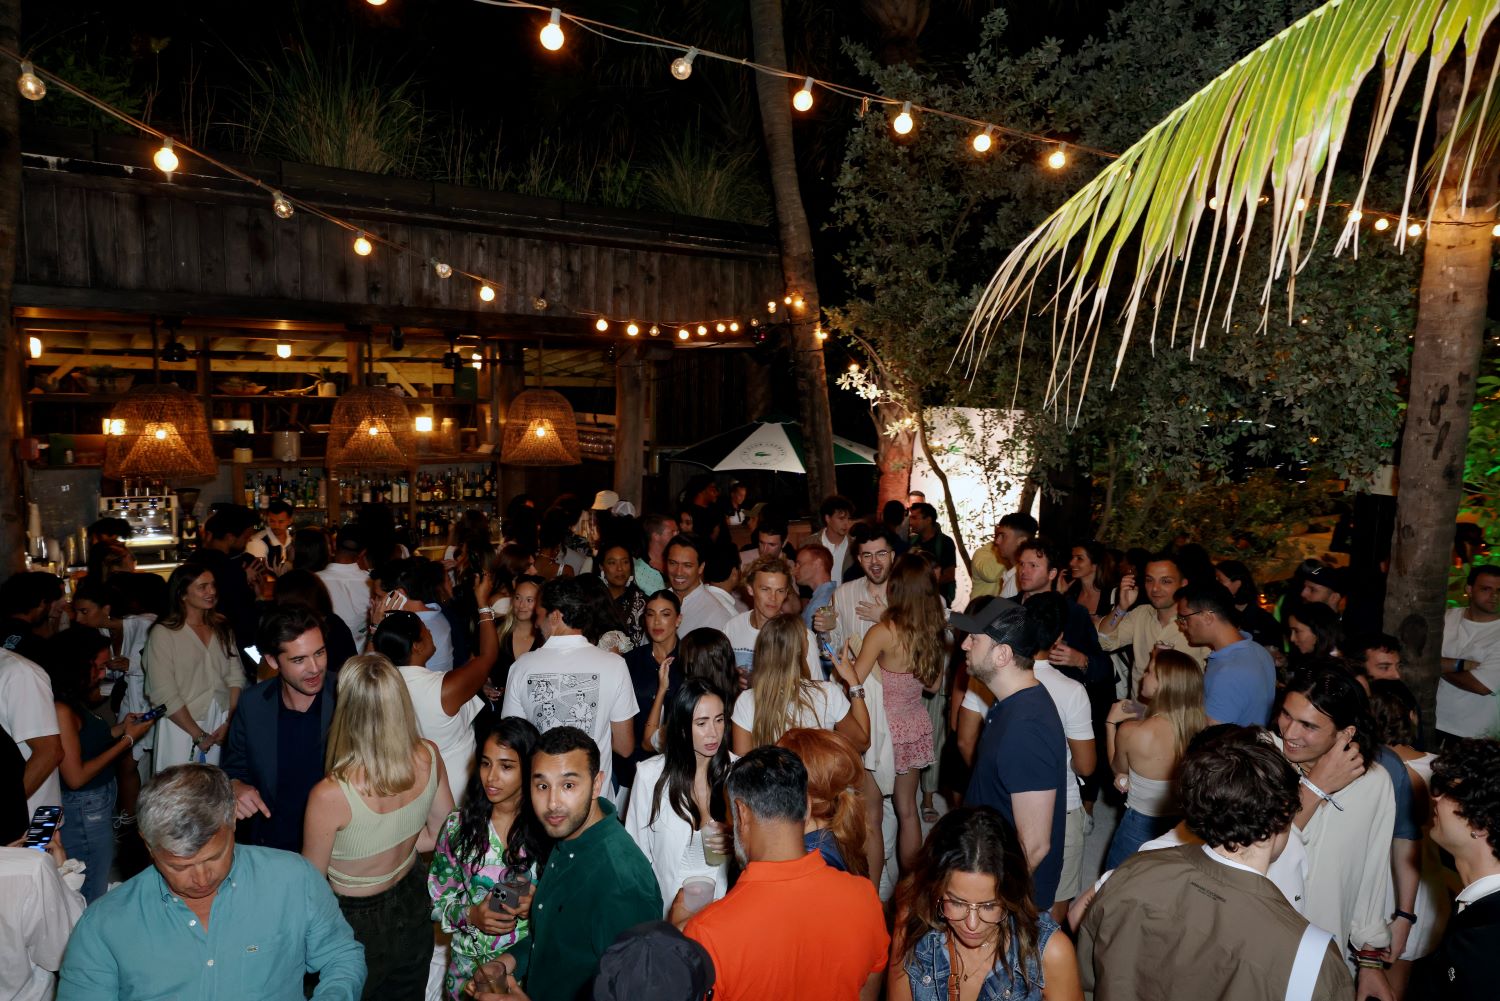 Lacoste Celebrates Sport and Fashion: Le Club Lacoste Miami and the Miami Open Launch Party